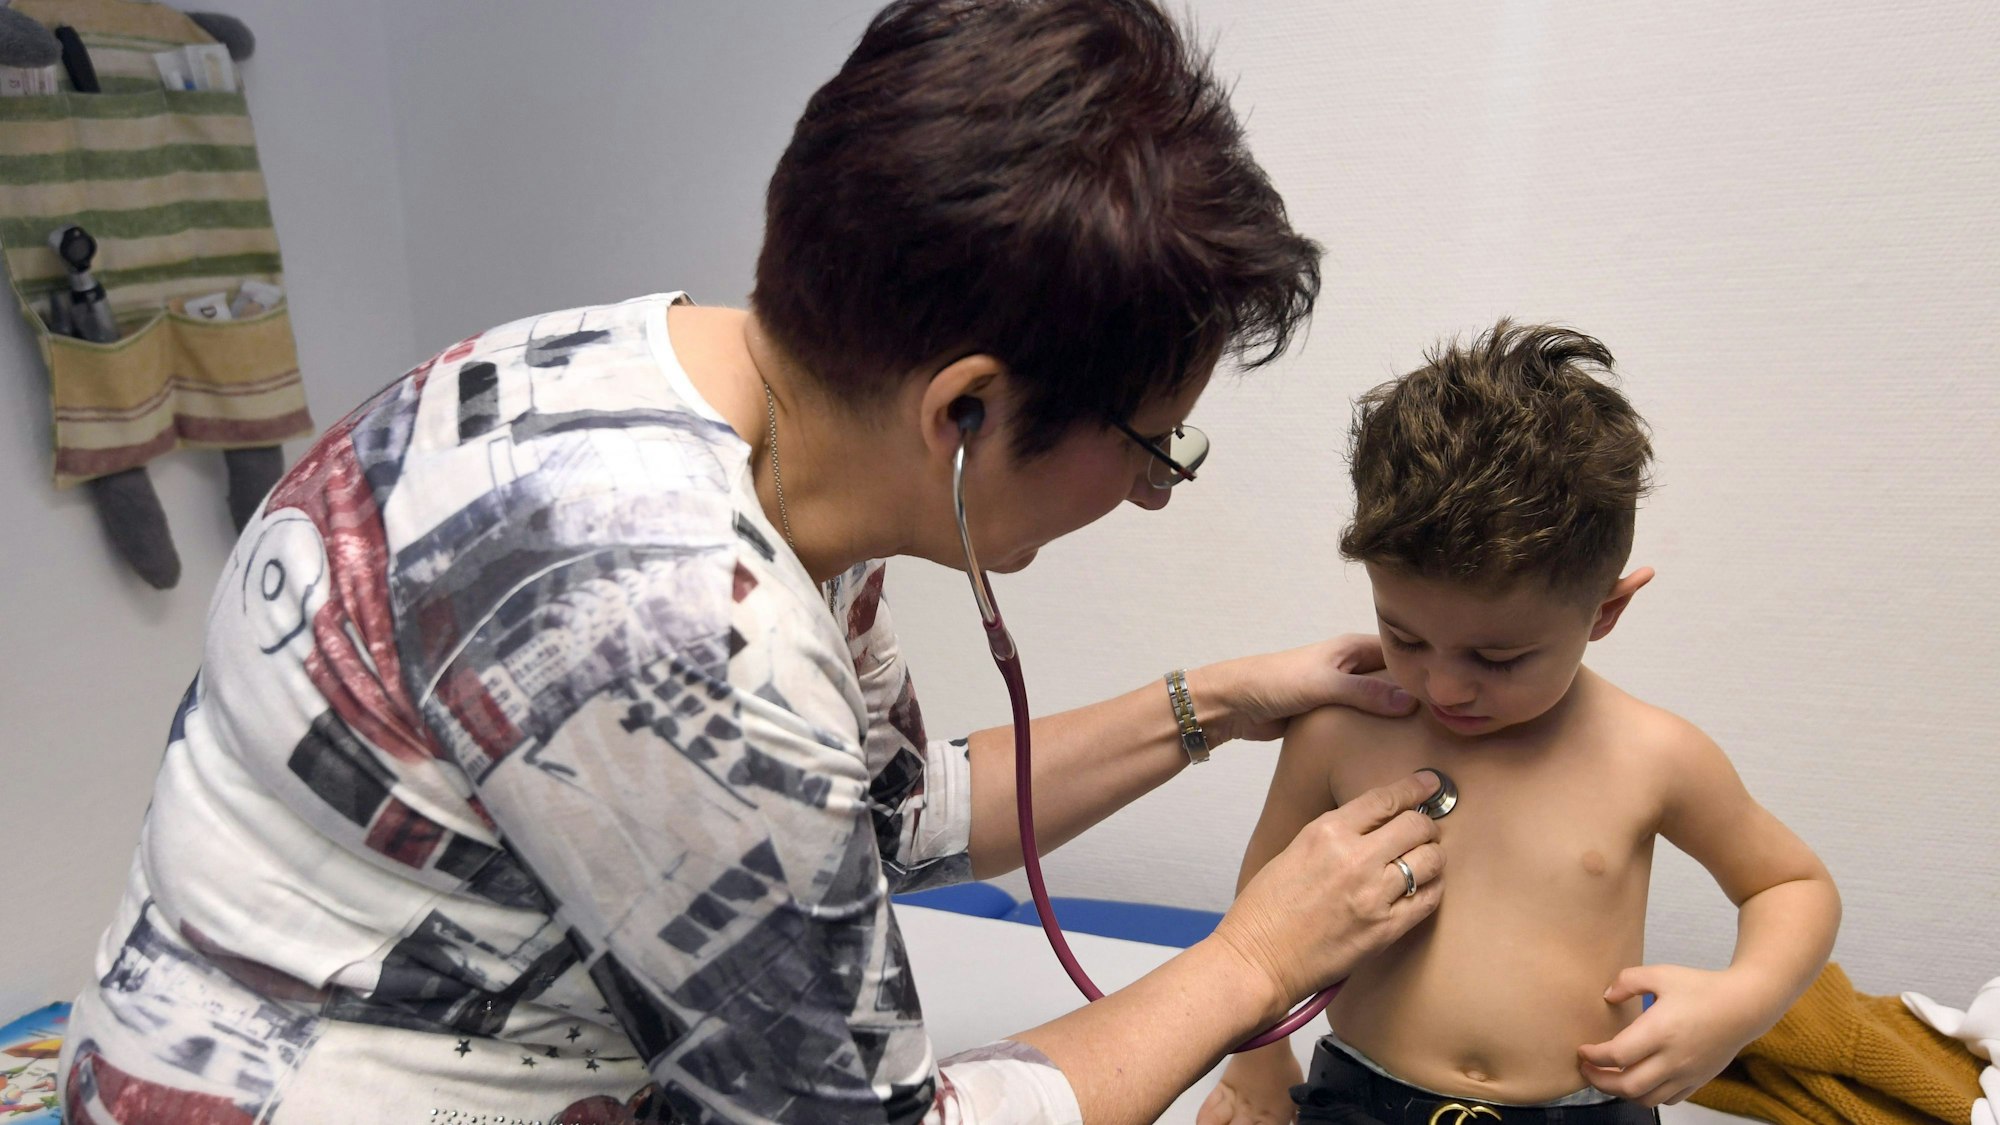 Eine Ärztin hört mit einem Stethoskop den Brustbereich eines kleinen Jungen ab.